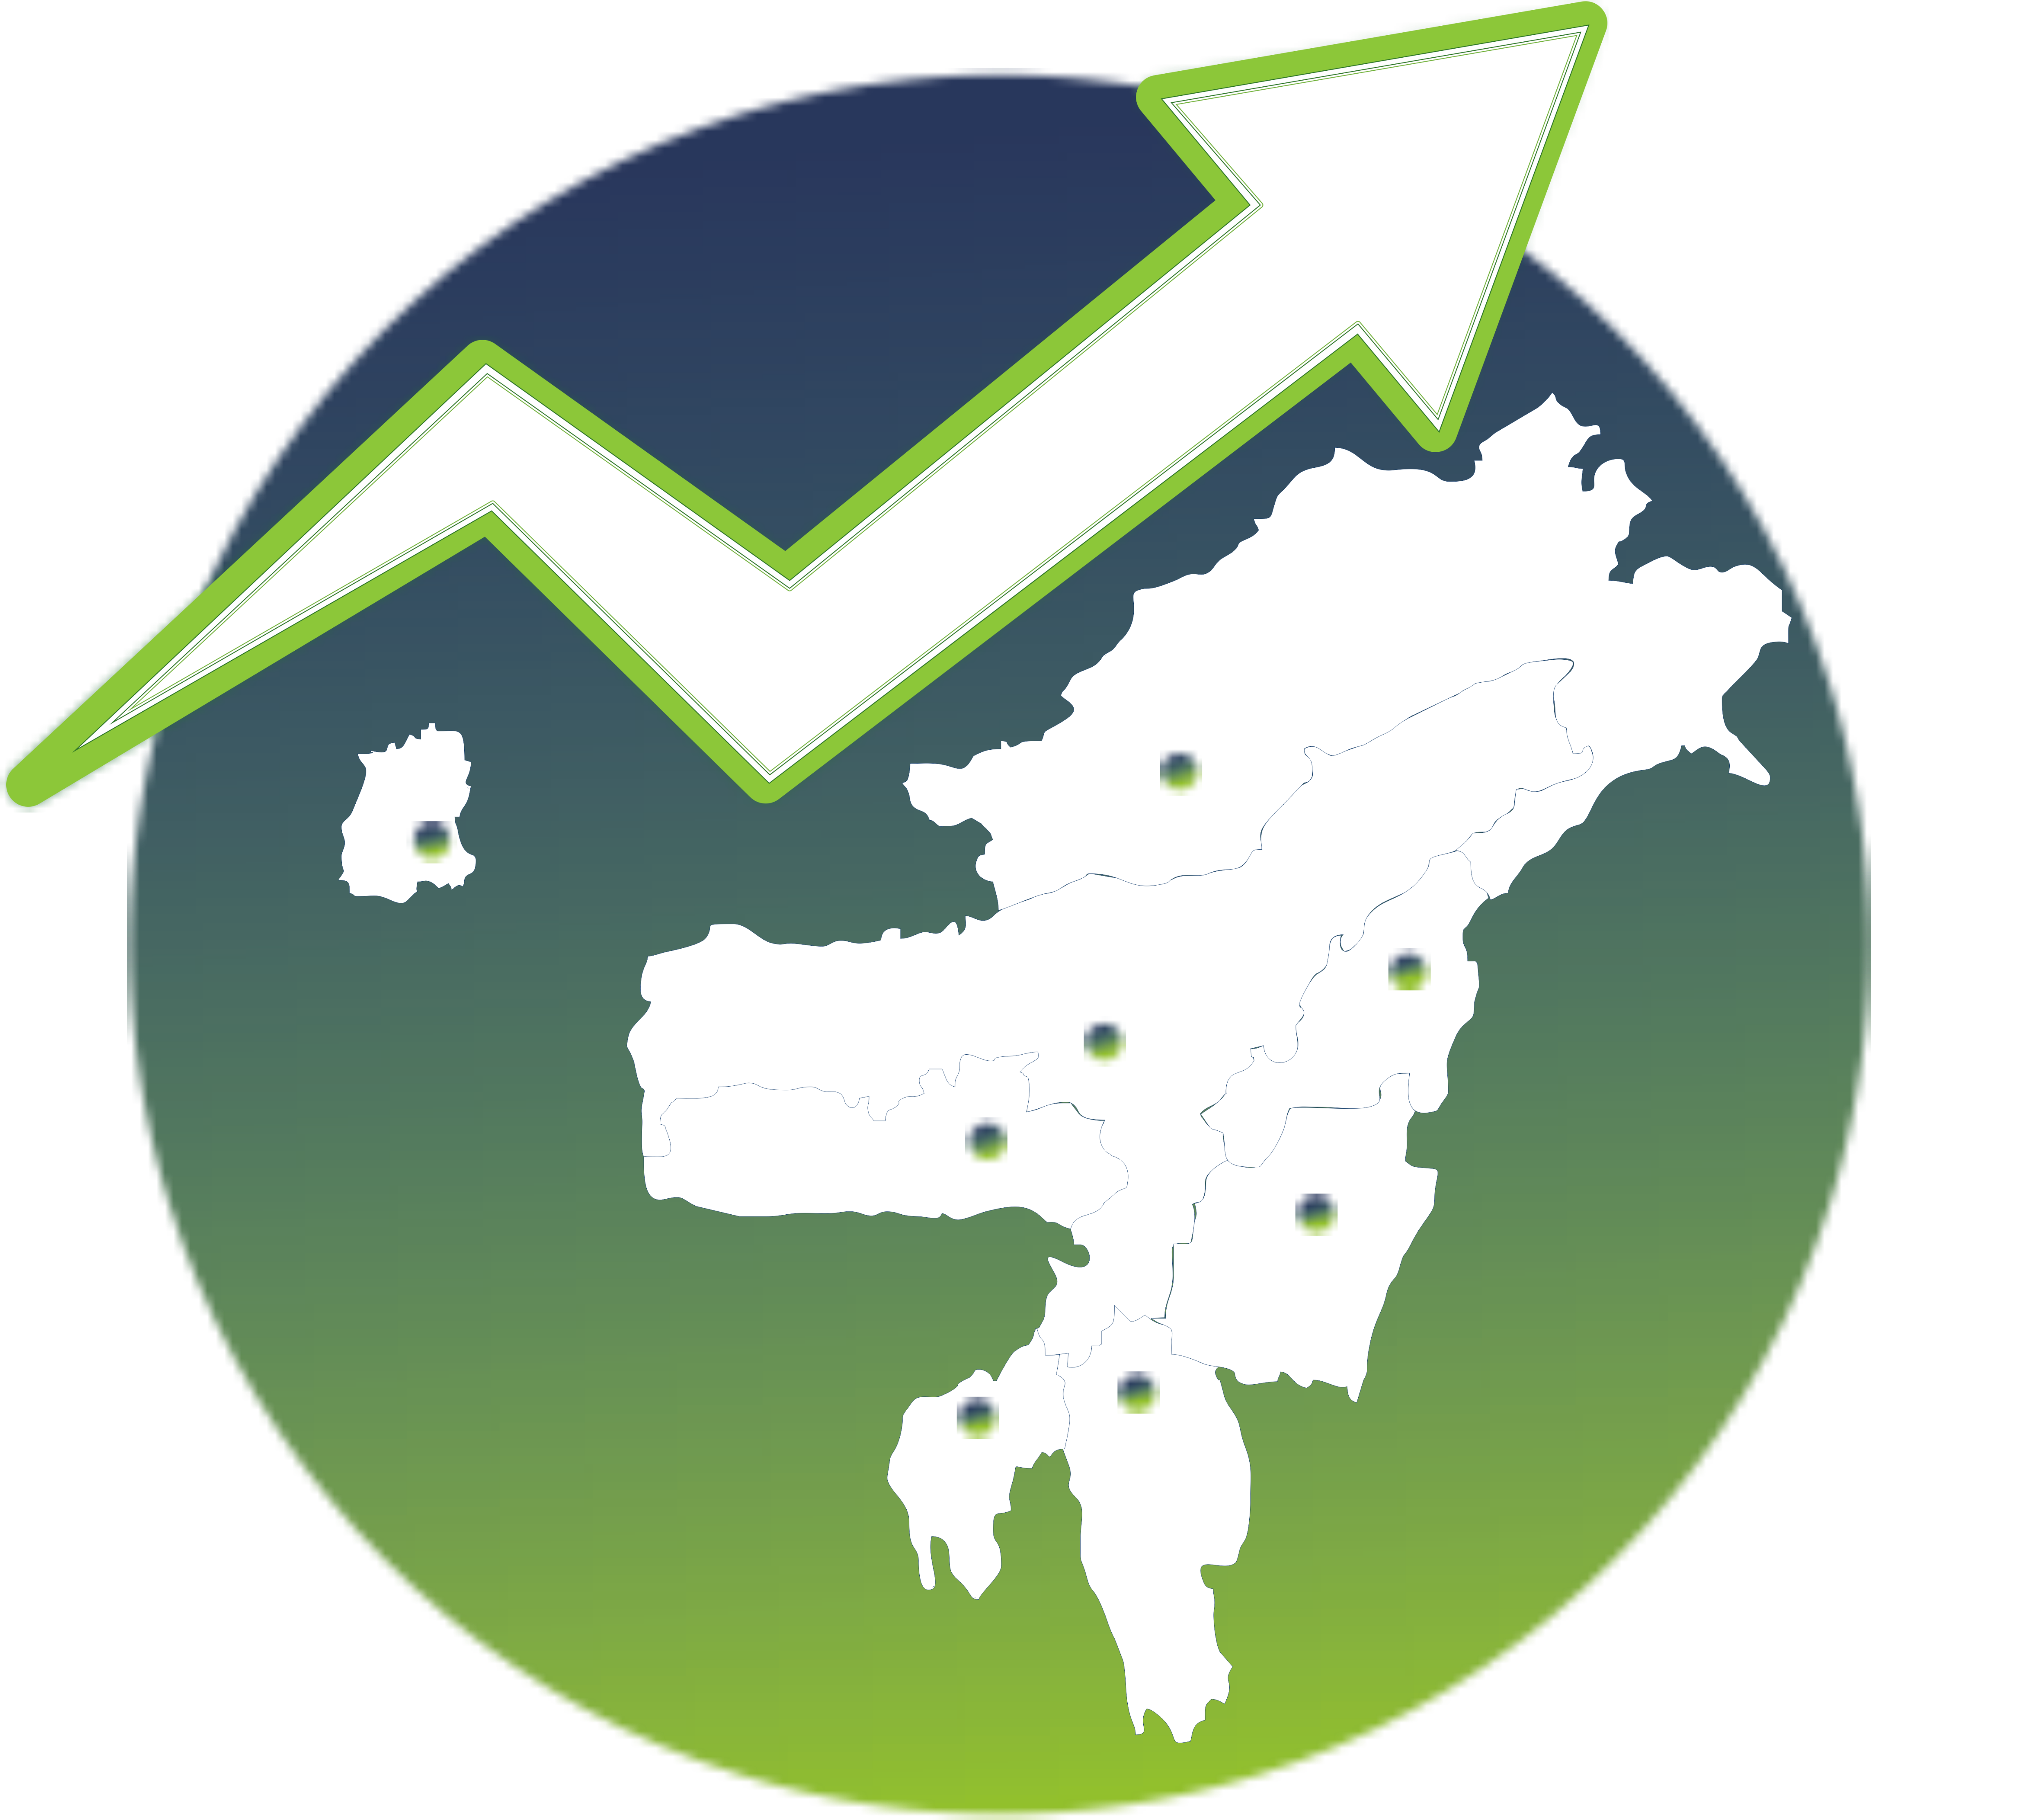 Invest Madhya Pradesh - Global Investor Summit